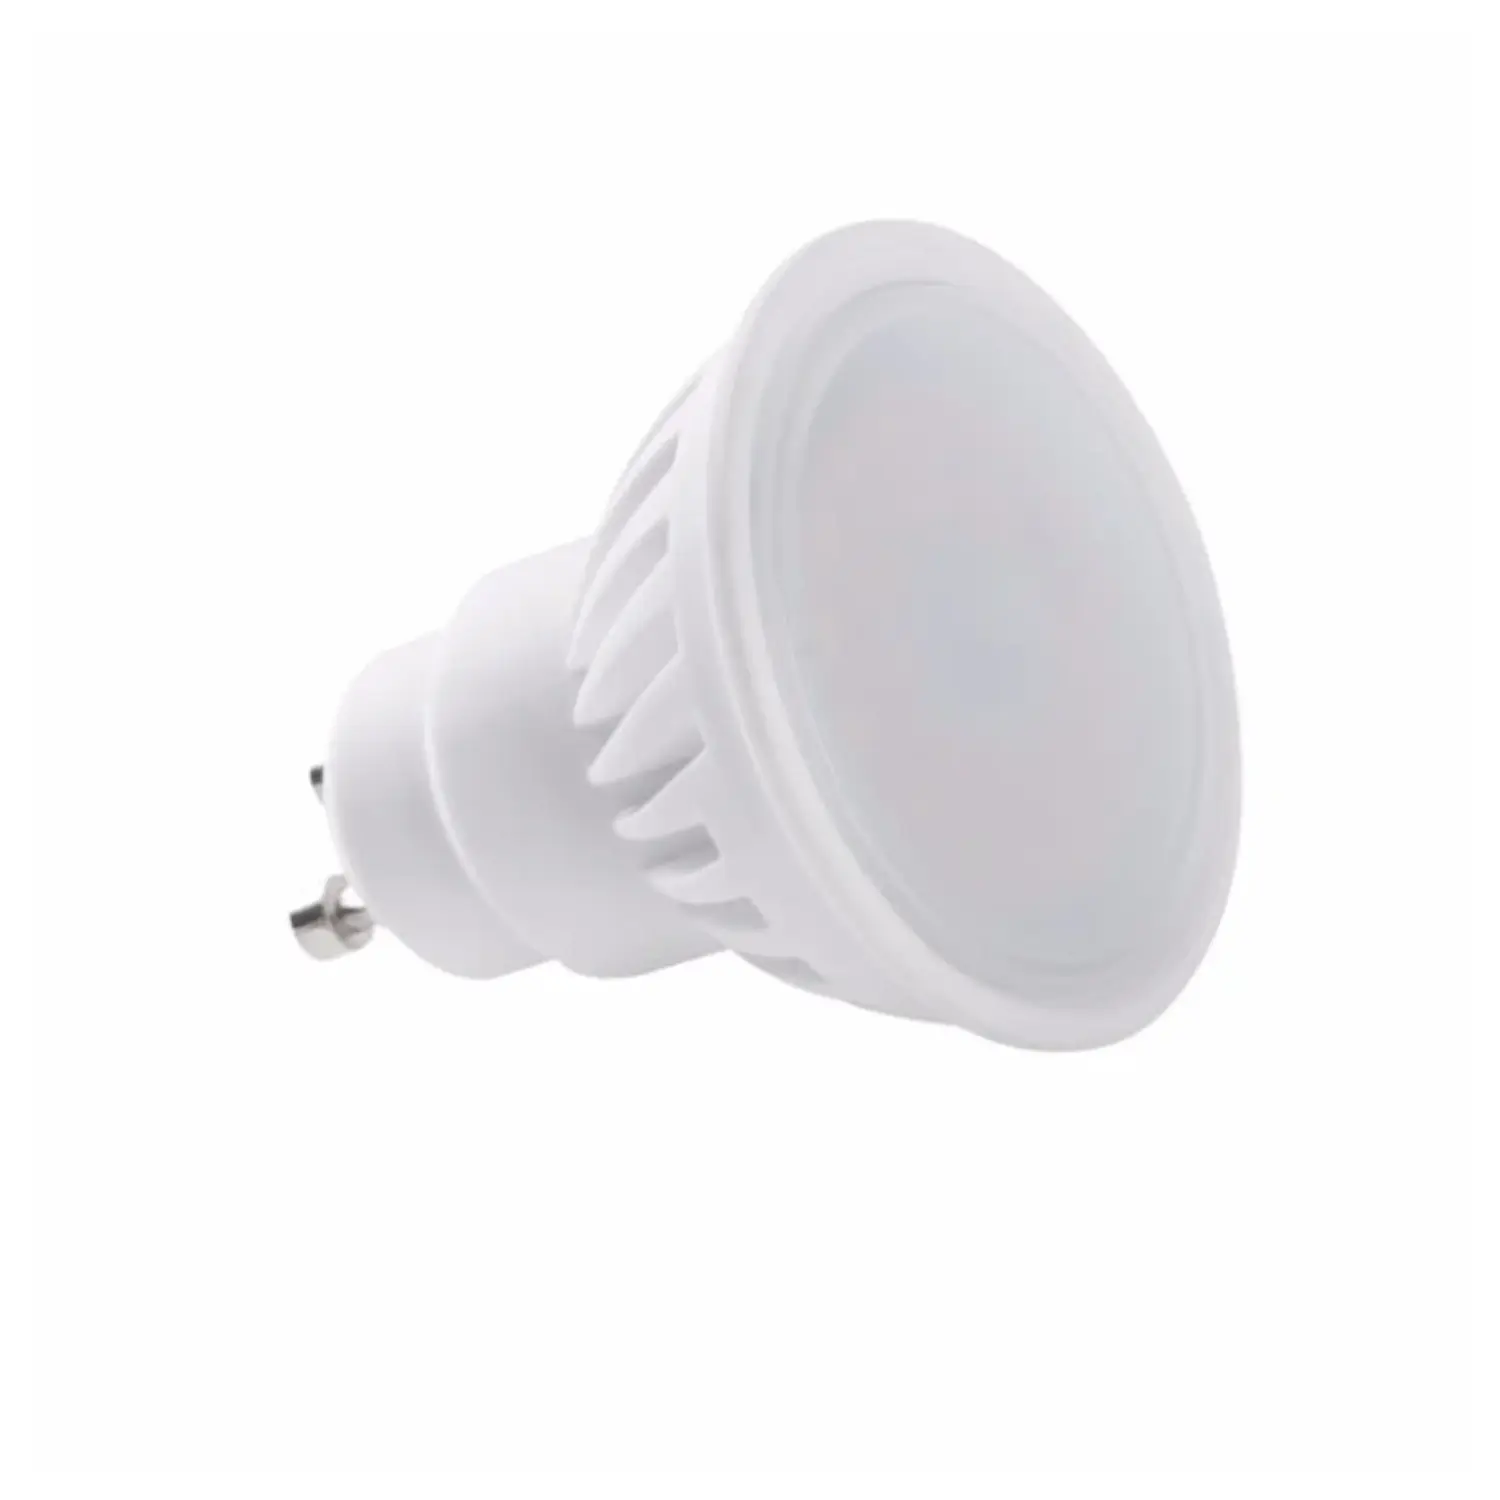 immagine del prodotto lampadina led tedi ceramica gu10 9 watt bianco caldo